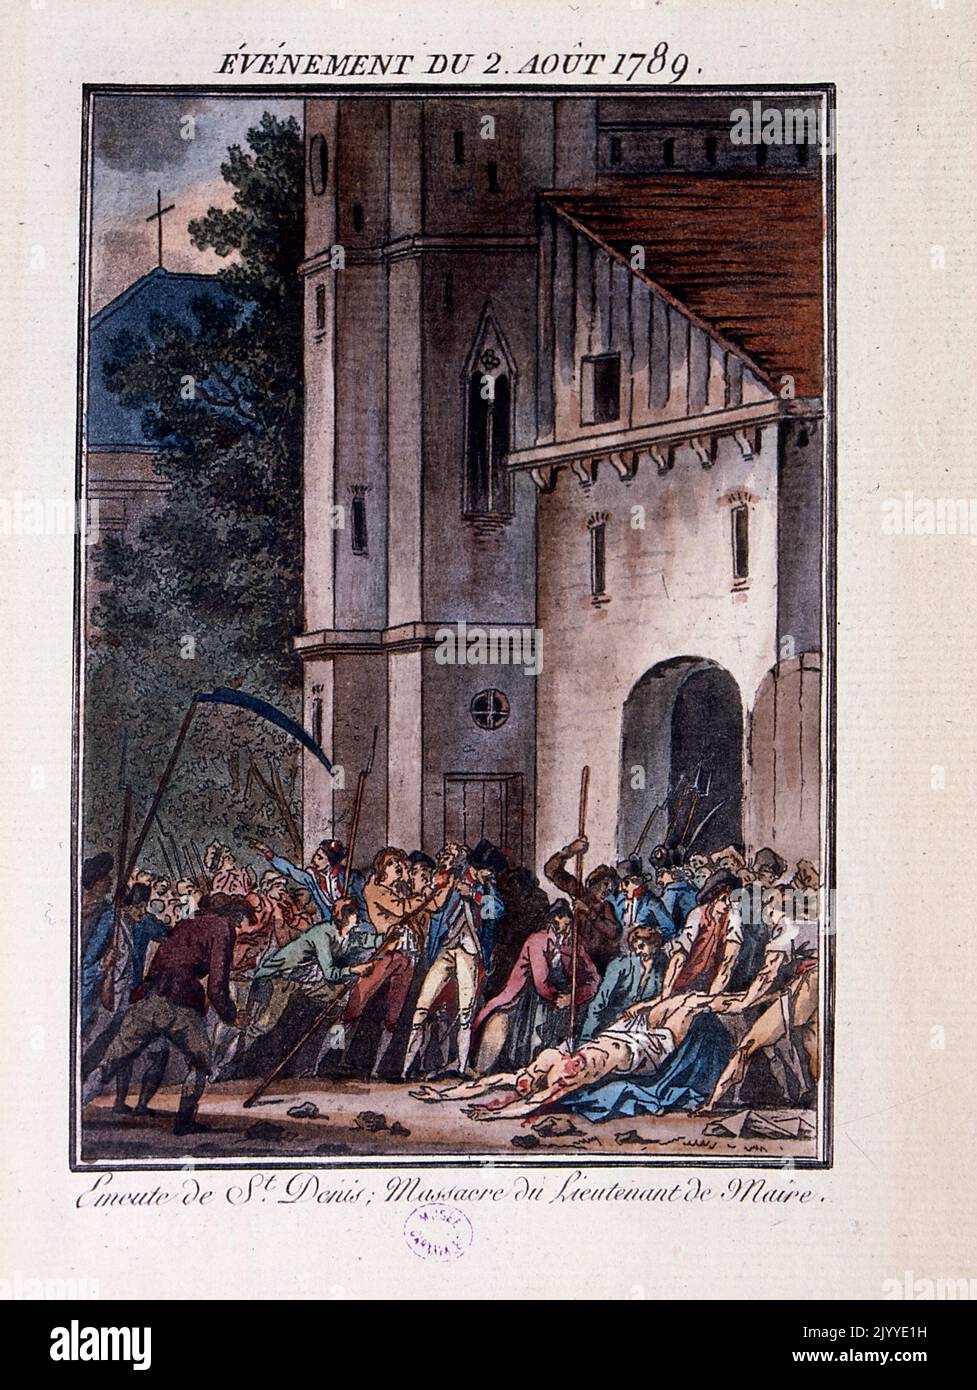 Farbige Illustration des Massakers von Lieutenant de Maire, das in St. Denis in Paris stattfand. Stockfoto